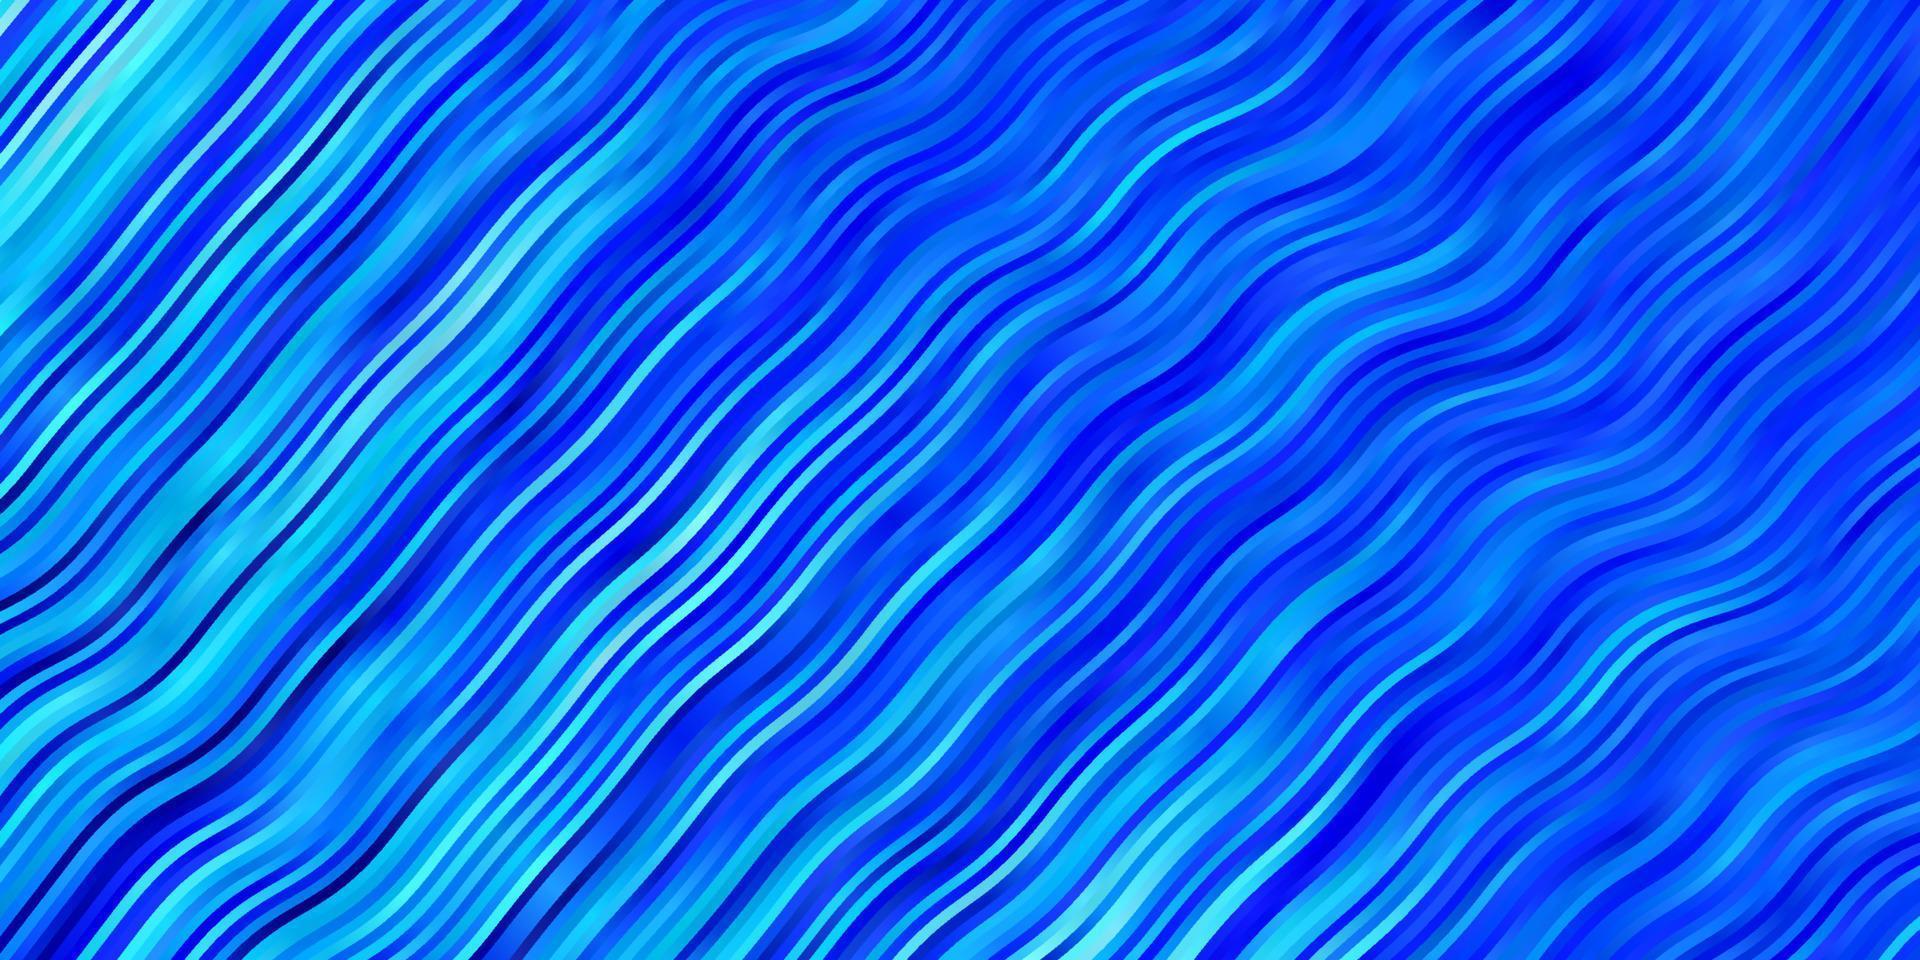 sfondo vettoriale azzurro con curve.